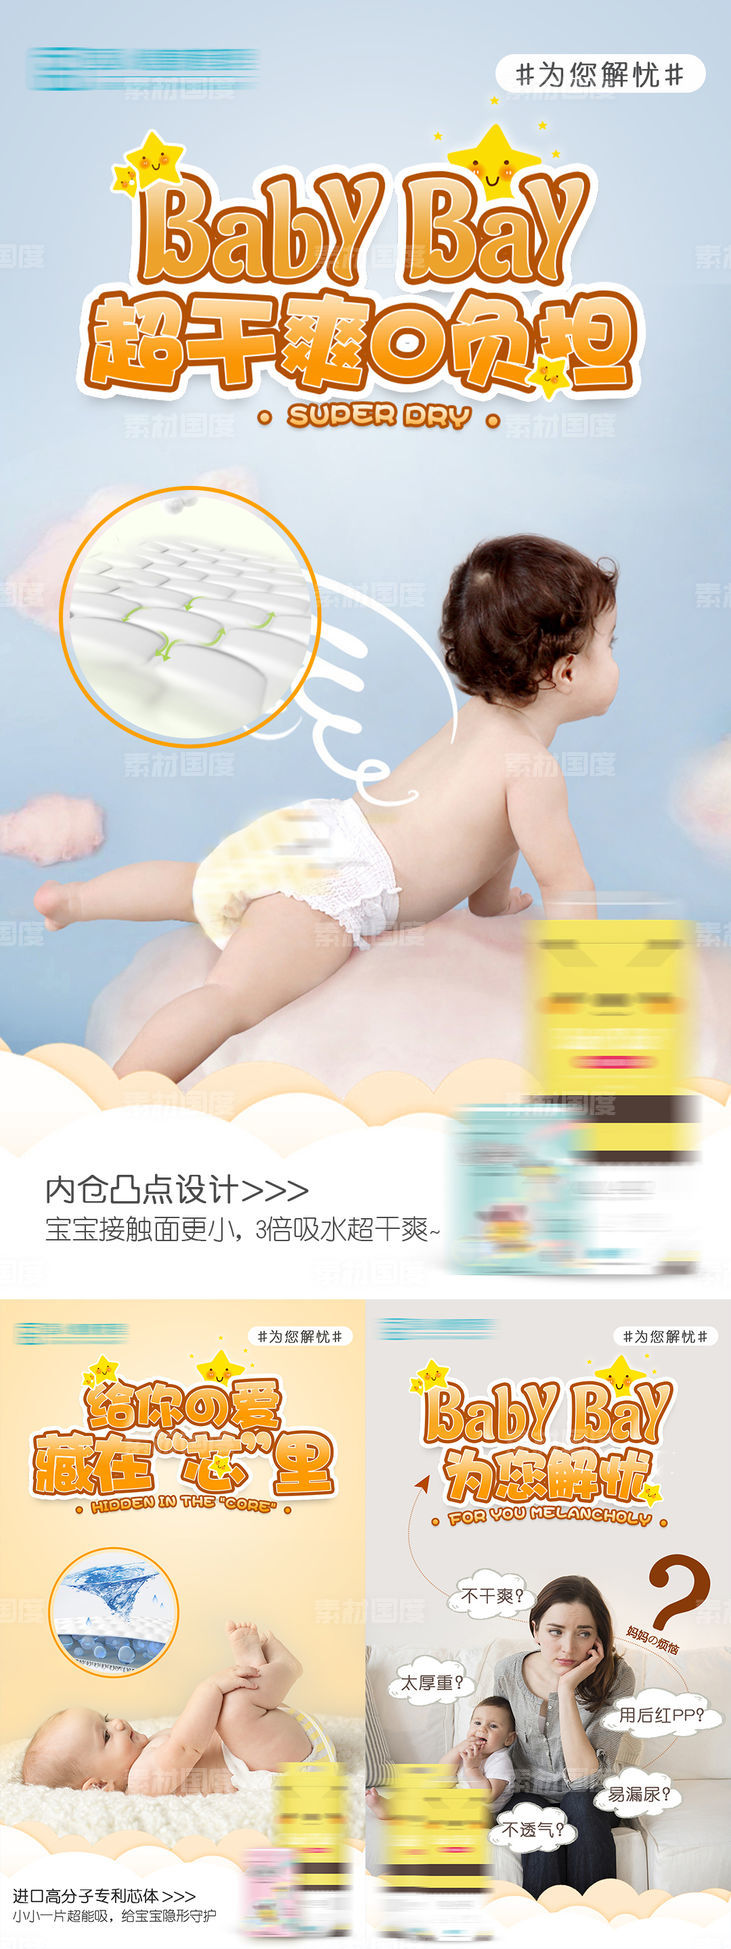 婴儿纸尿裤卖点海报 